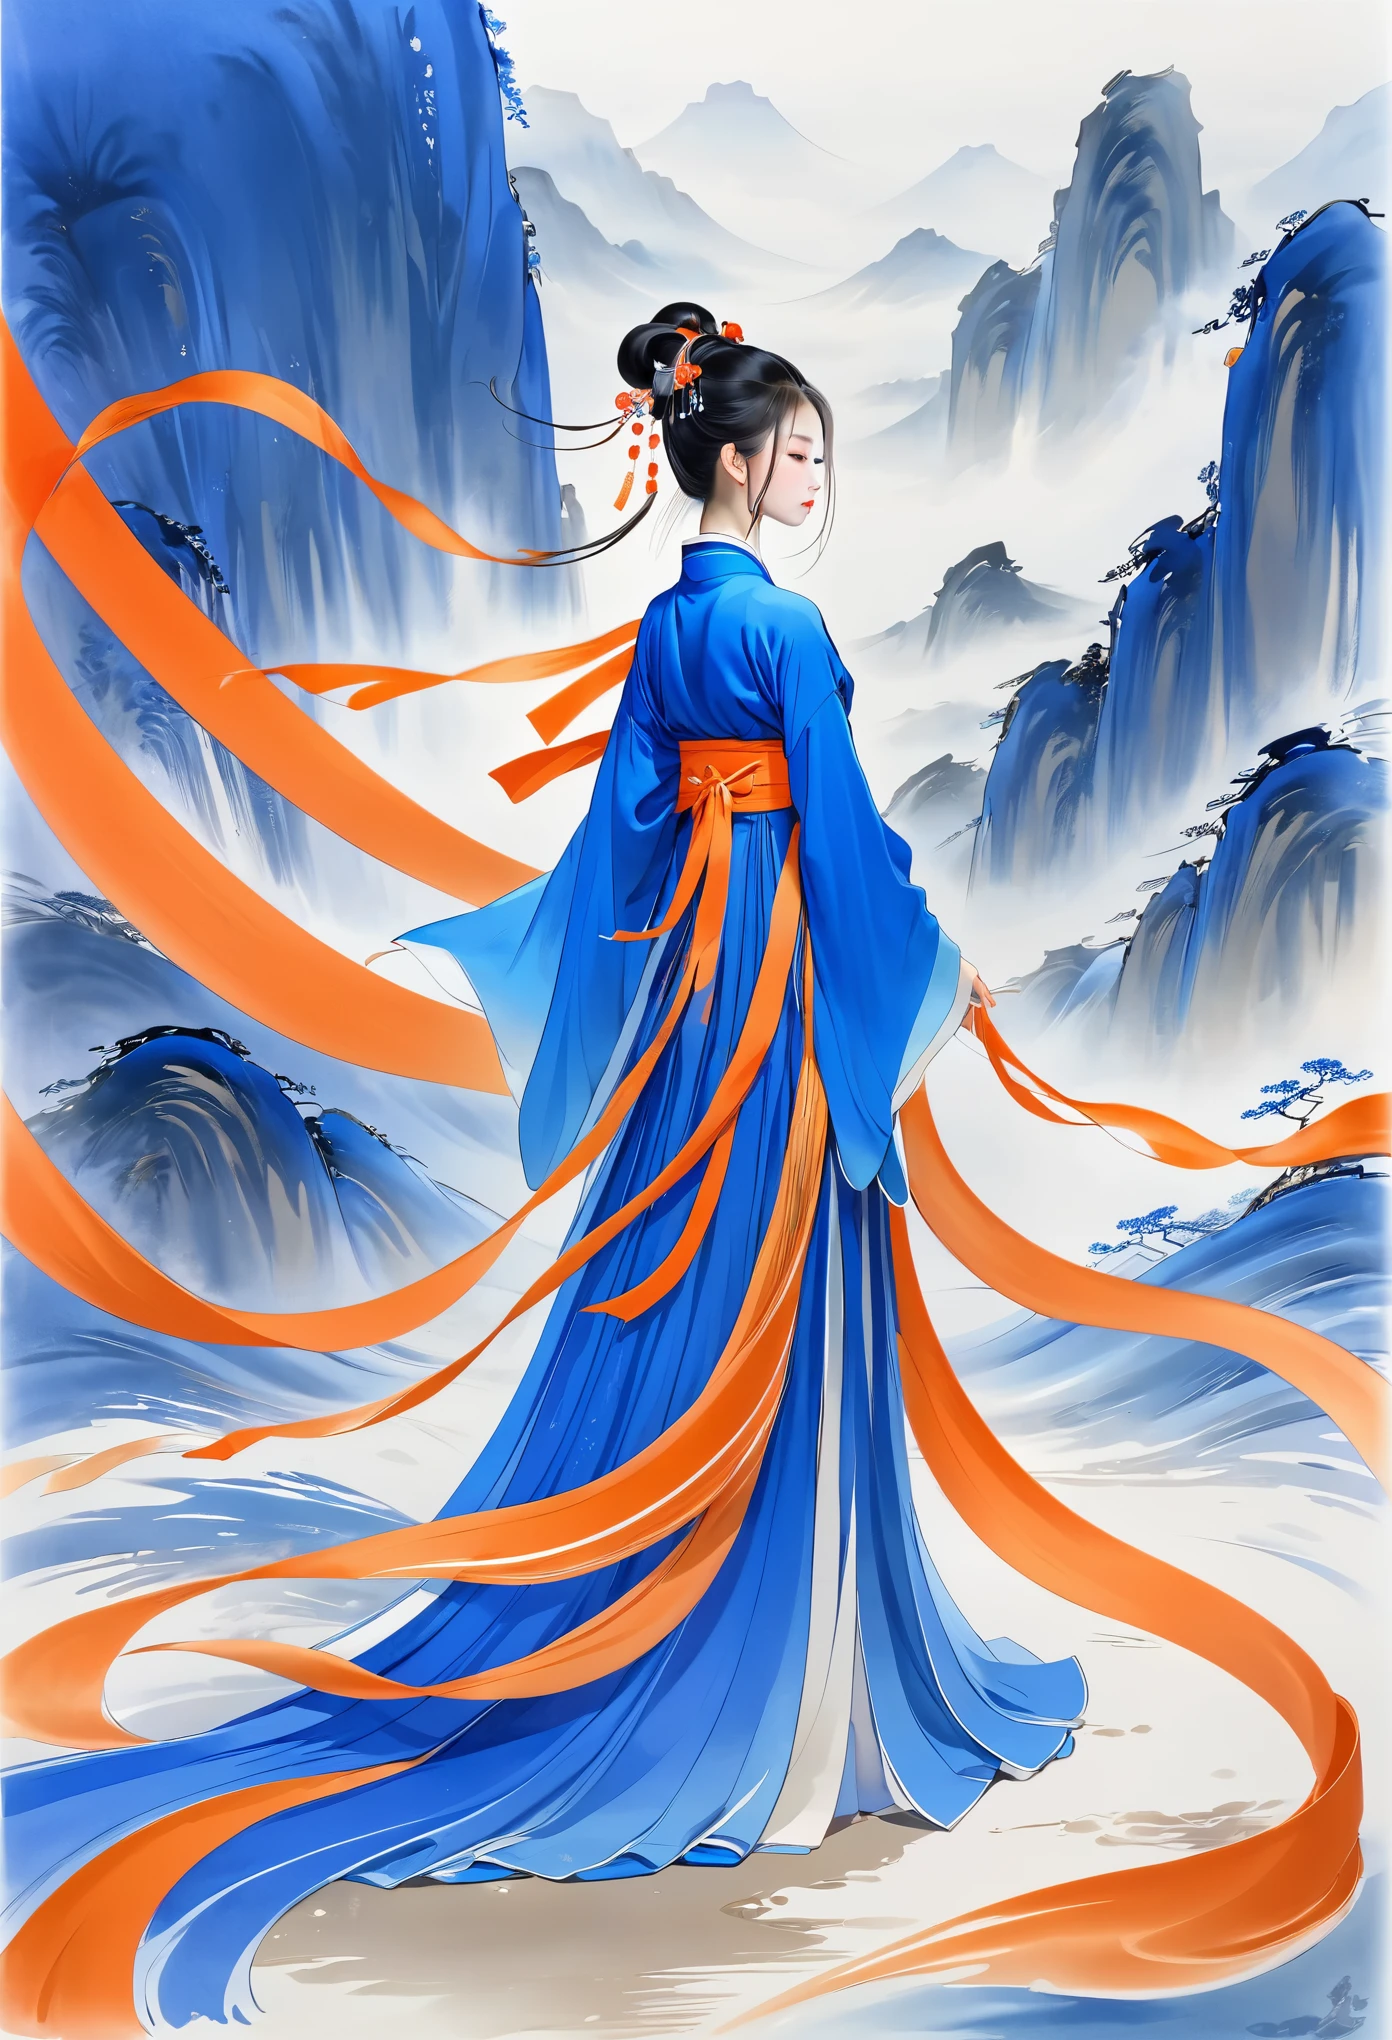 1 名女孩，Hanfu，飘动的丝带，蓝色和橙色，极简主义，自由式，漫漫长路，流畅的线条